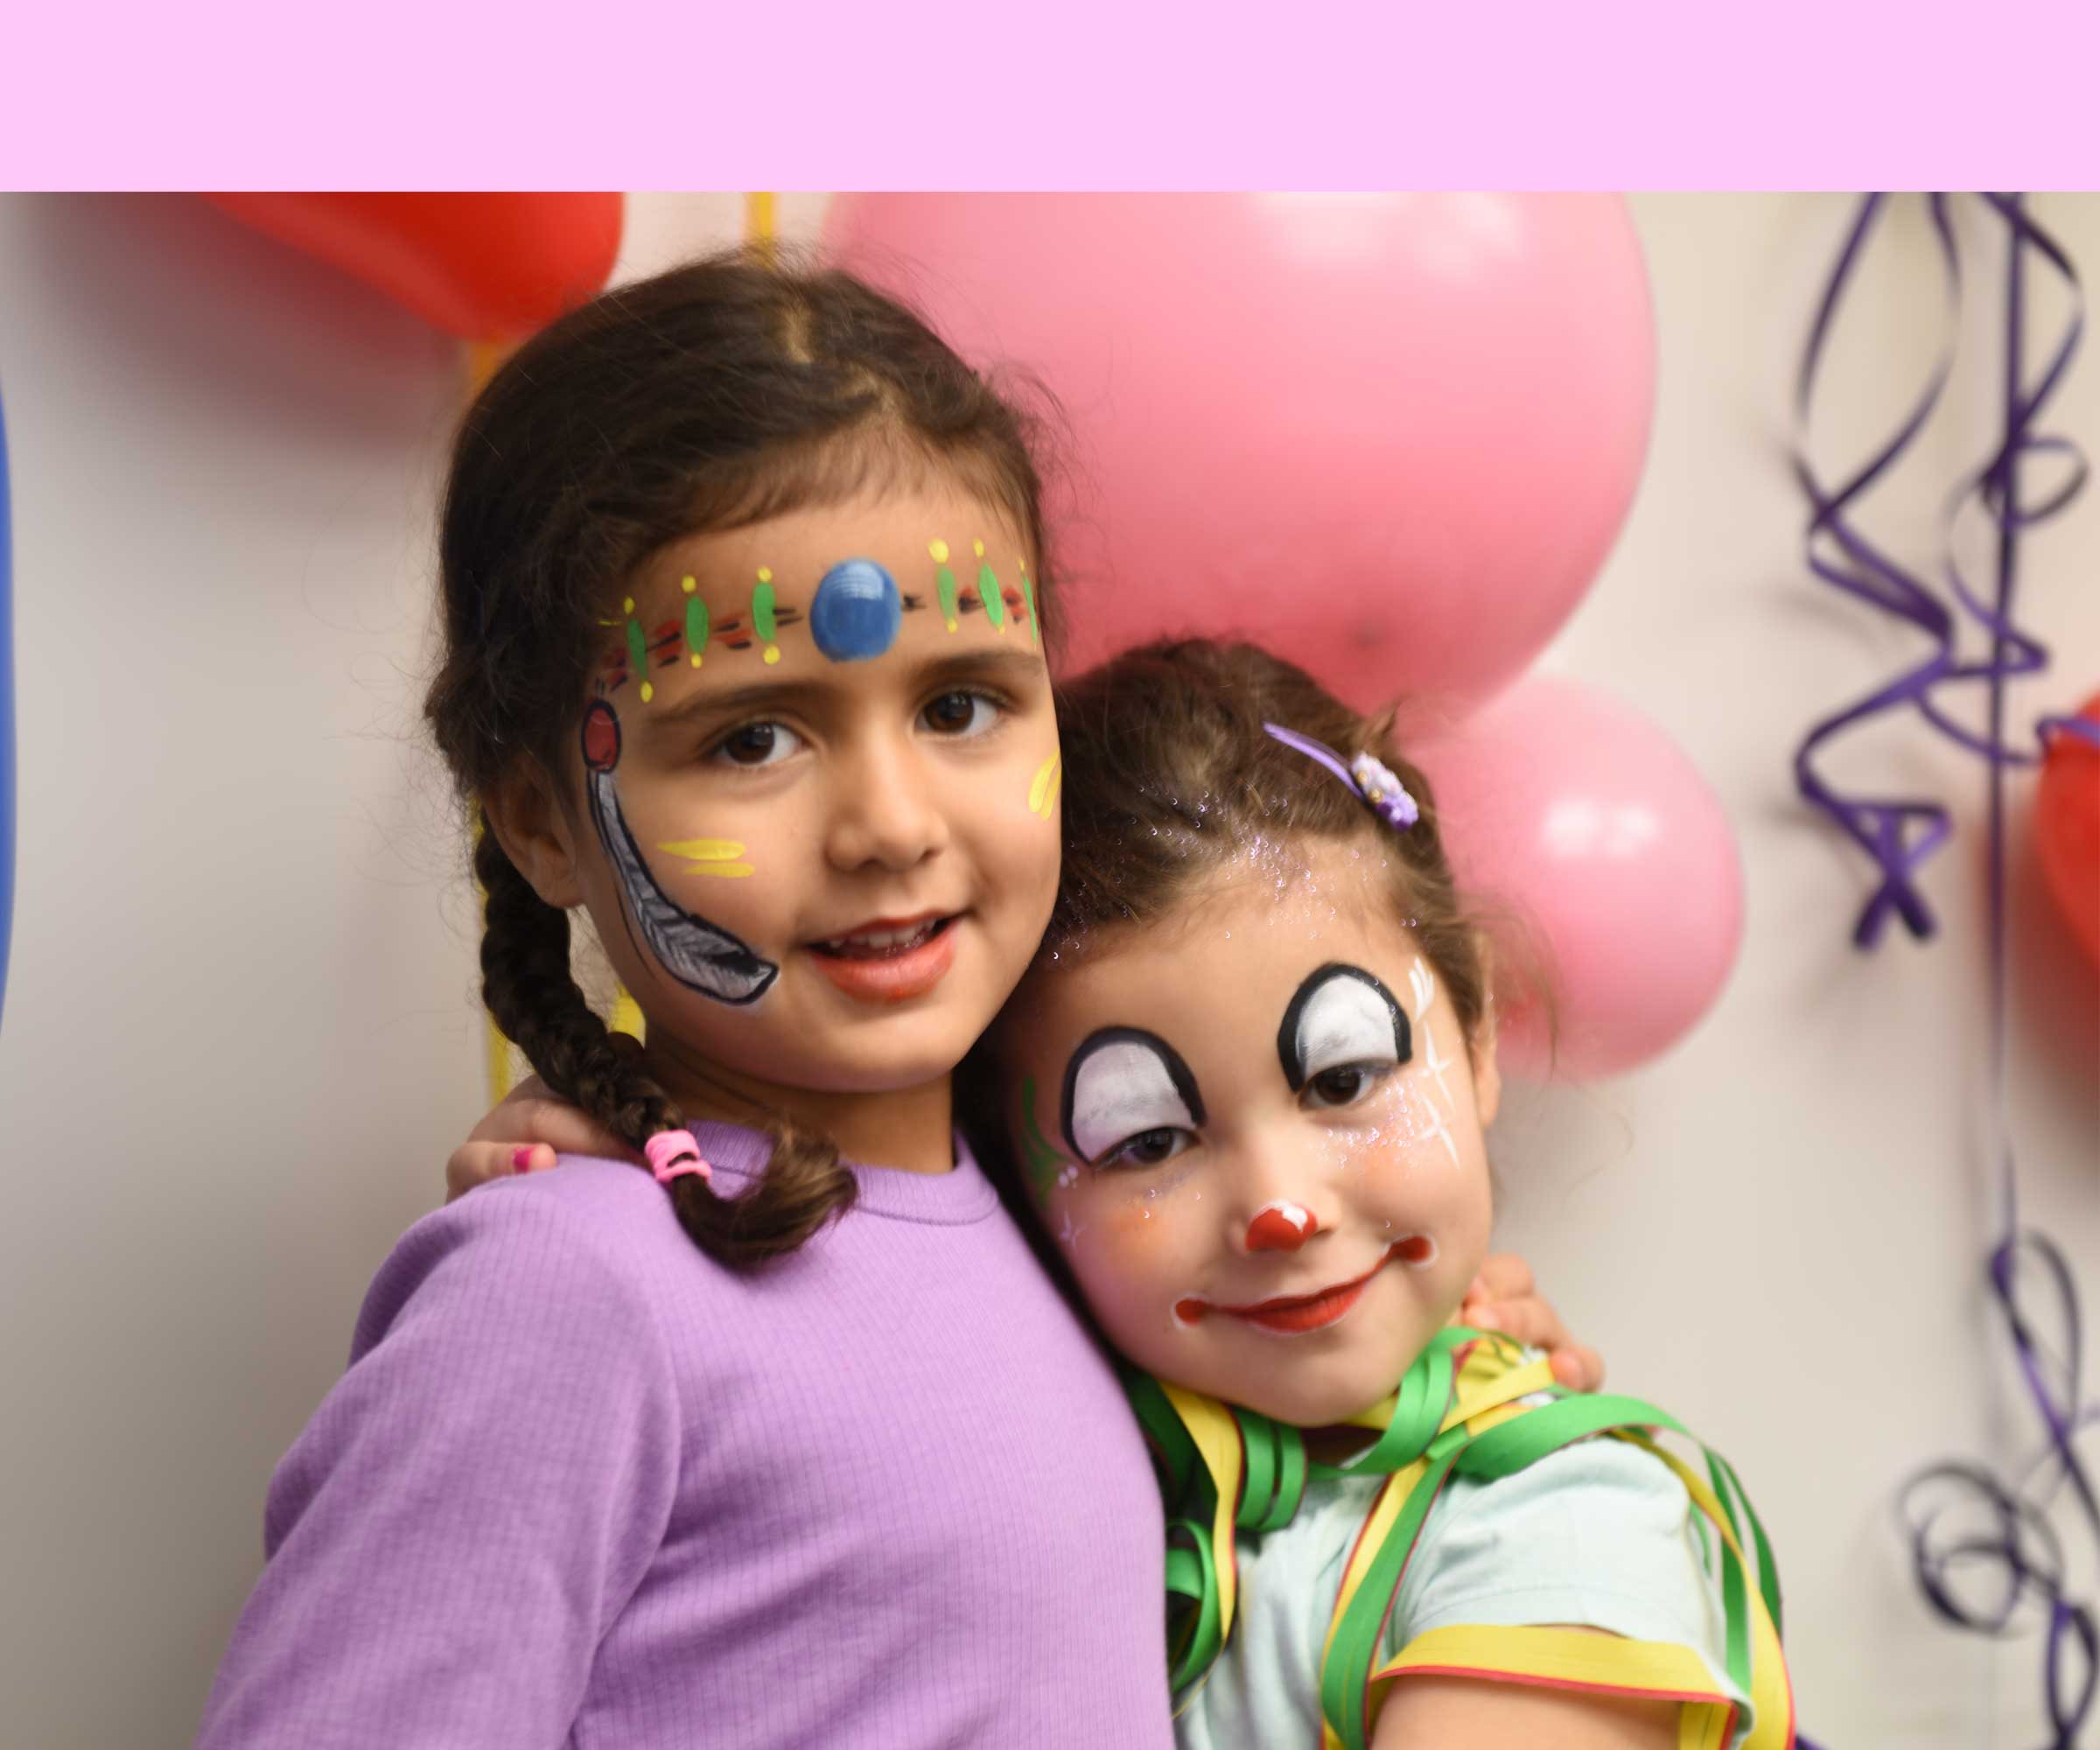 Maquillage enfant Fleur pour Carnaval - Idées conseils et tuto Maquillage